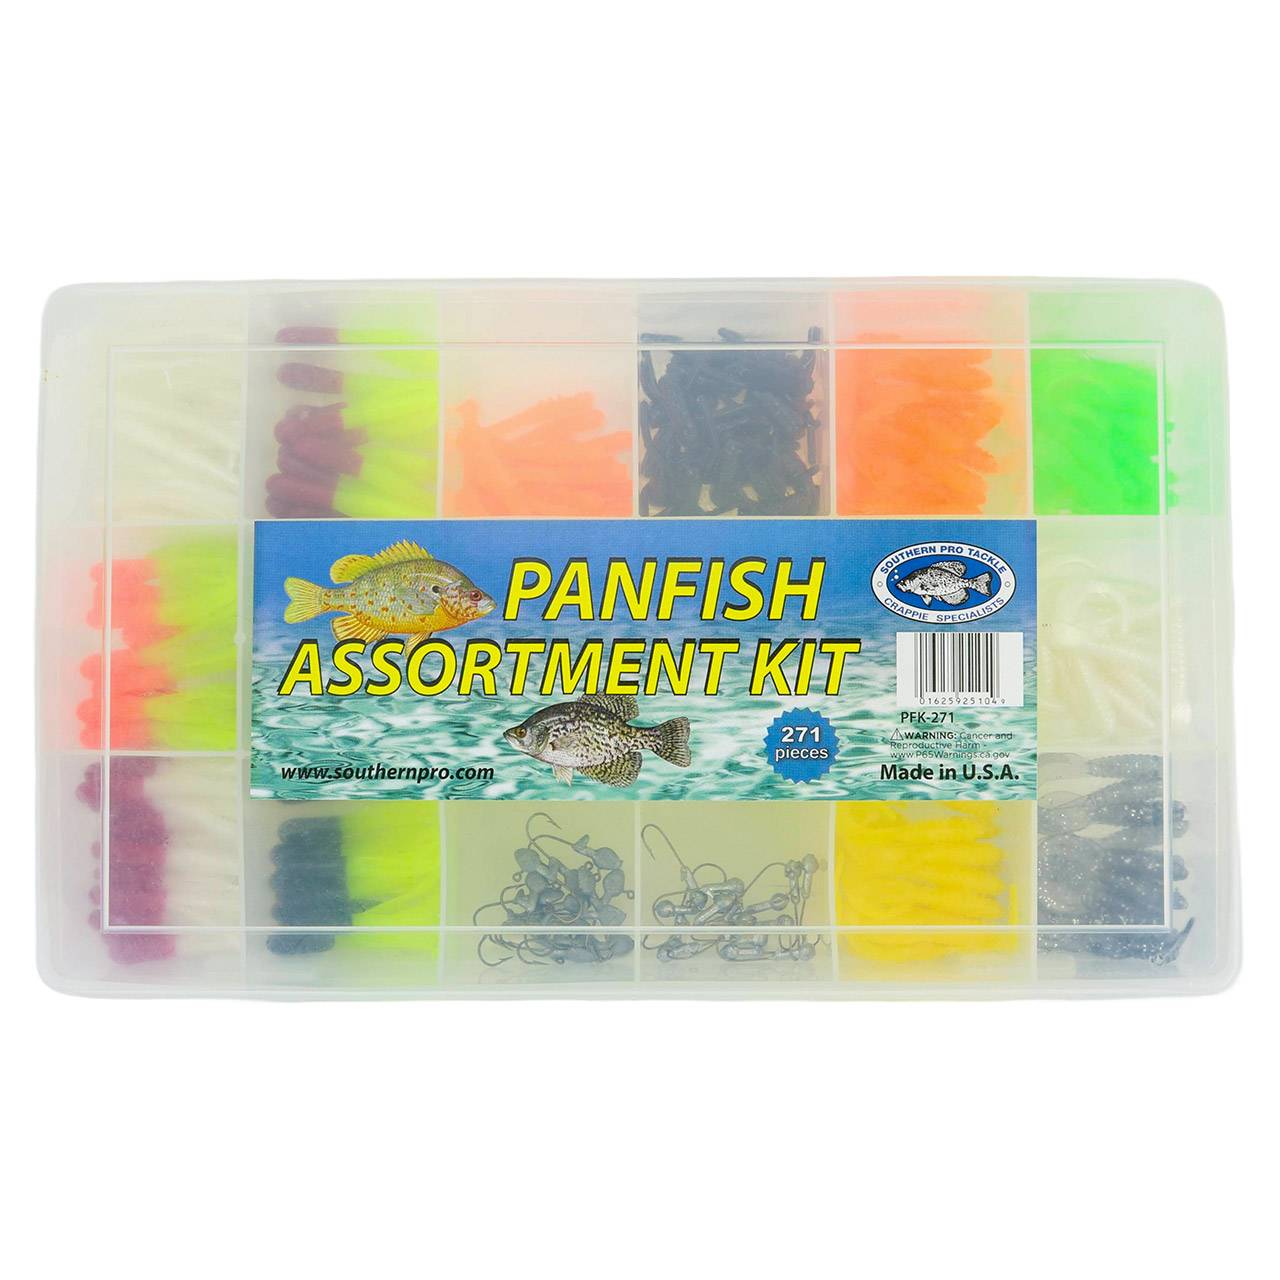 Panfish Kit